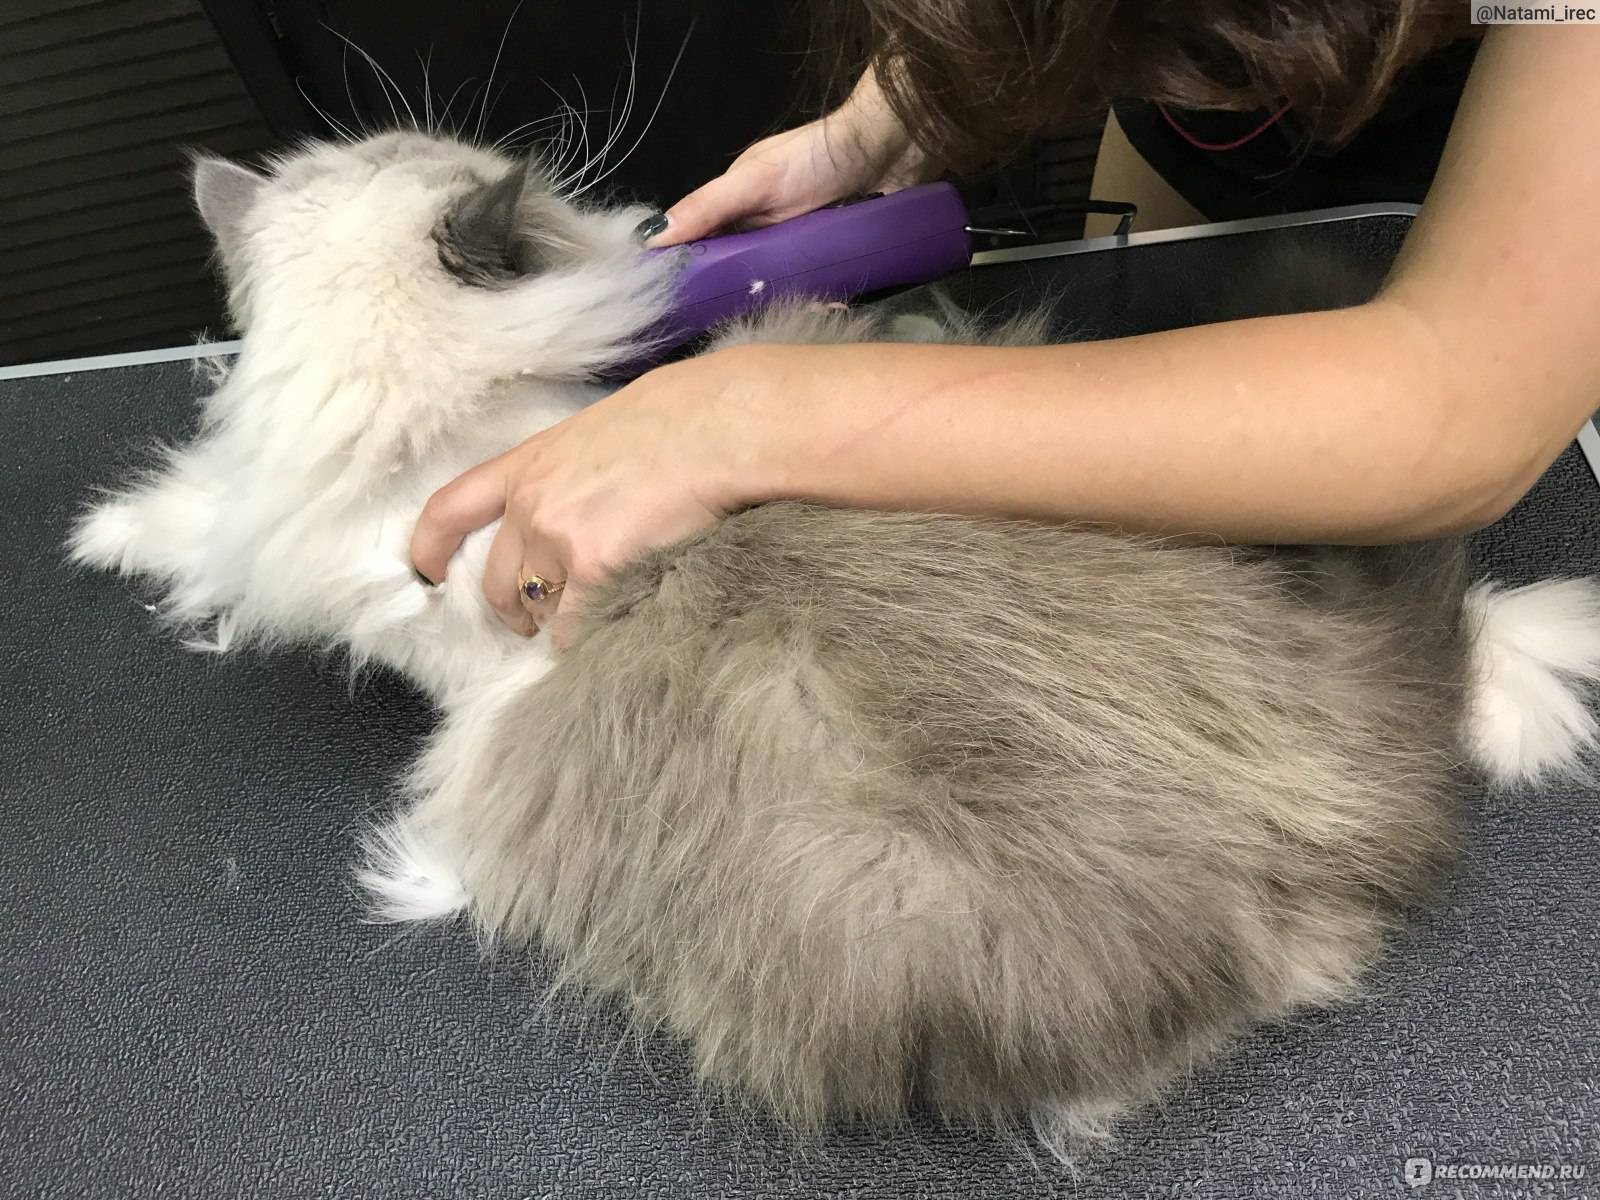 Зачем стричь кота: нужно ли постригать кота на лето или в целях гигиены